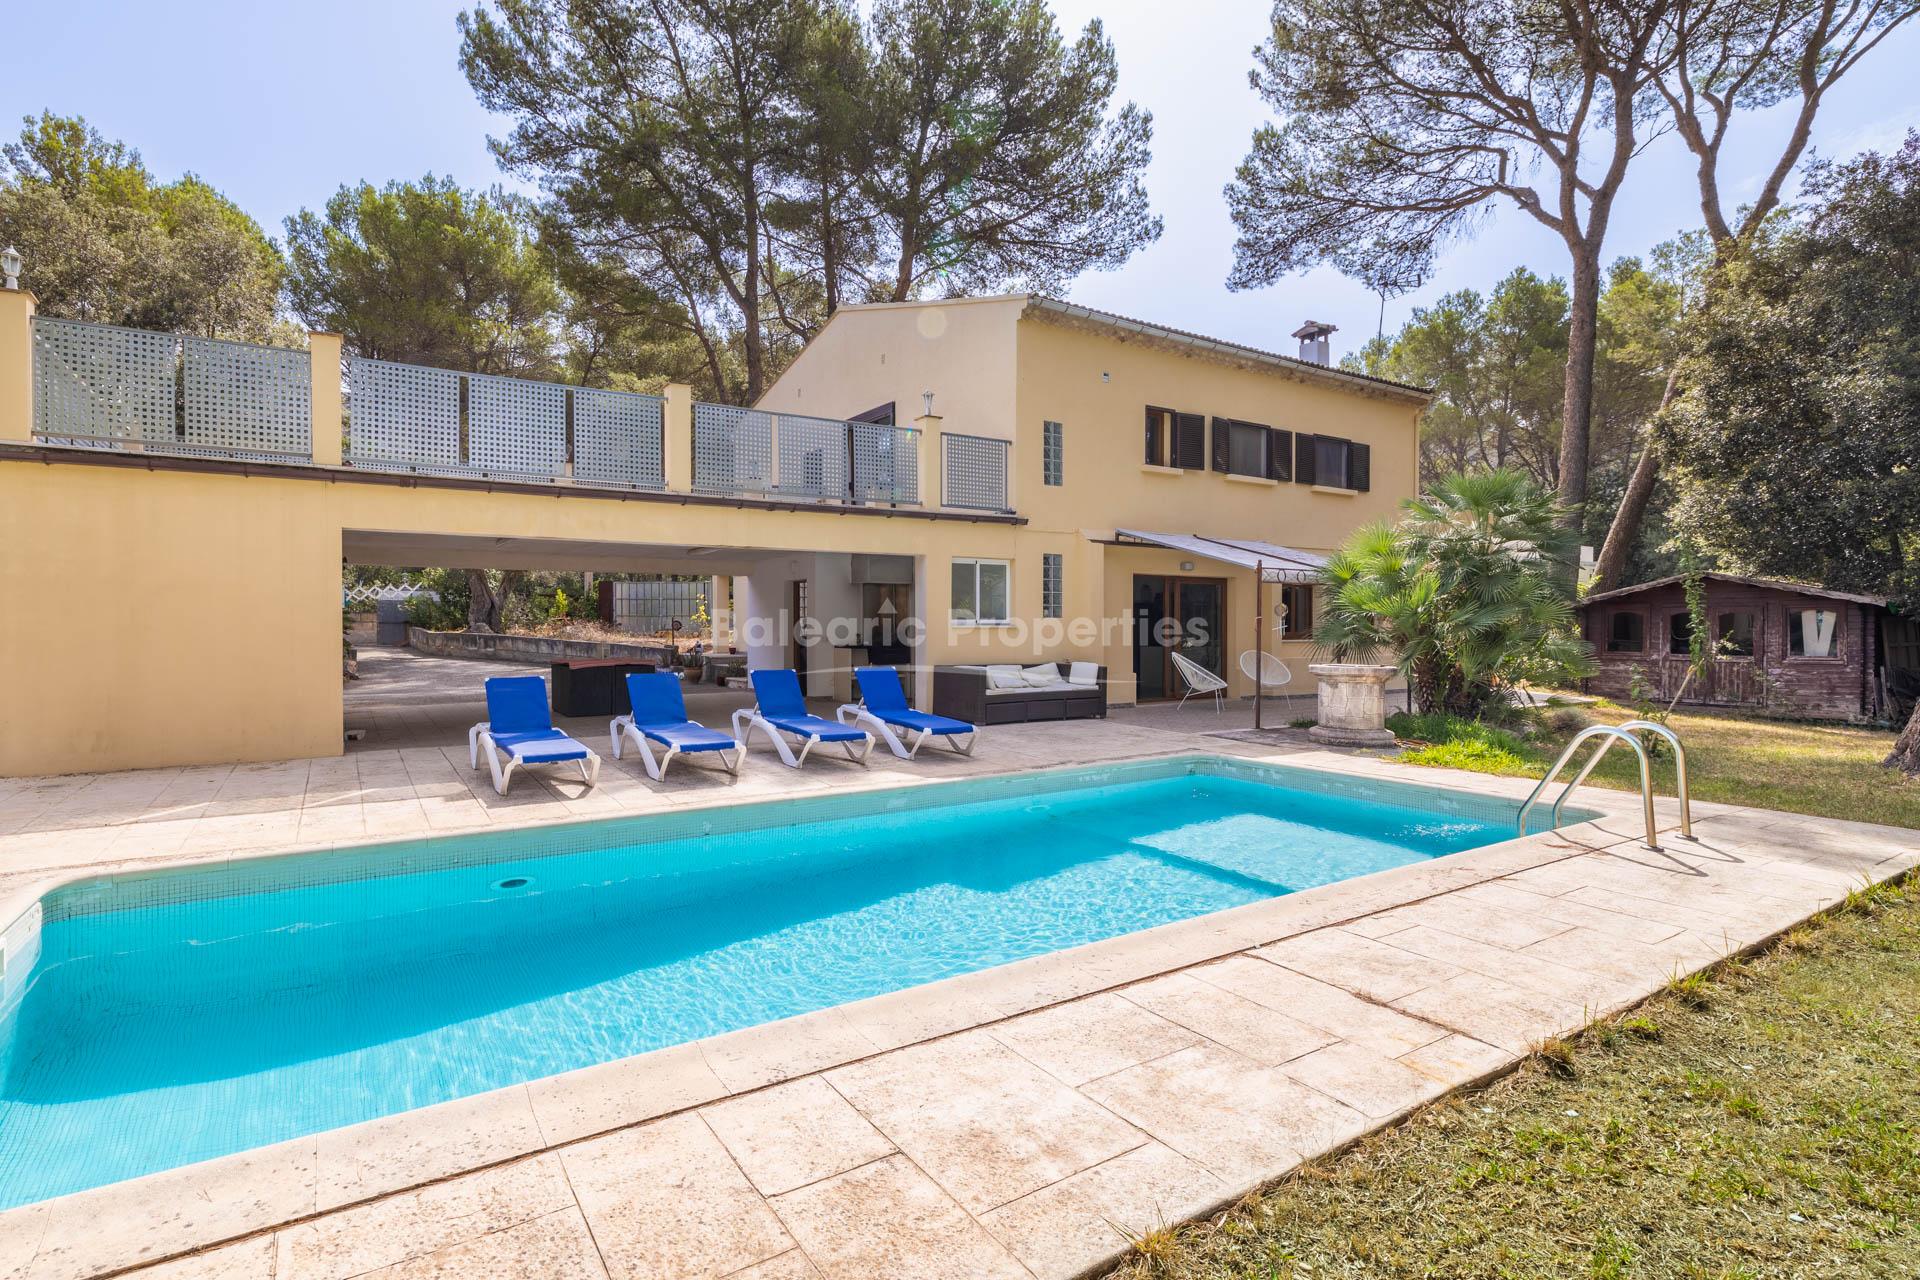 Spacious villa for sale close to the golf course in Pollensa, Mallorca